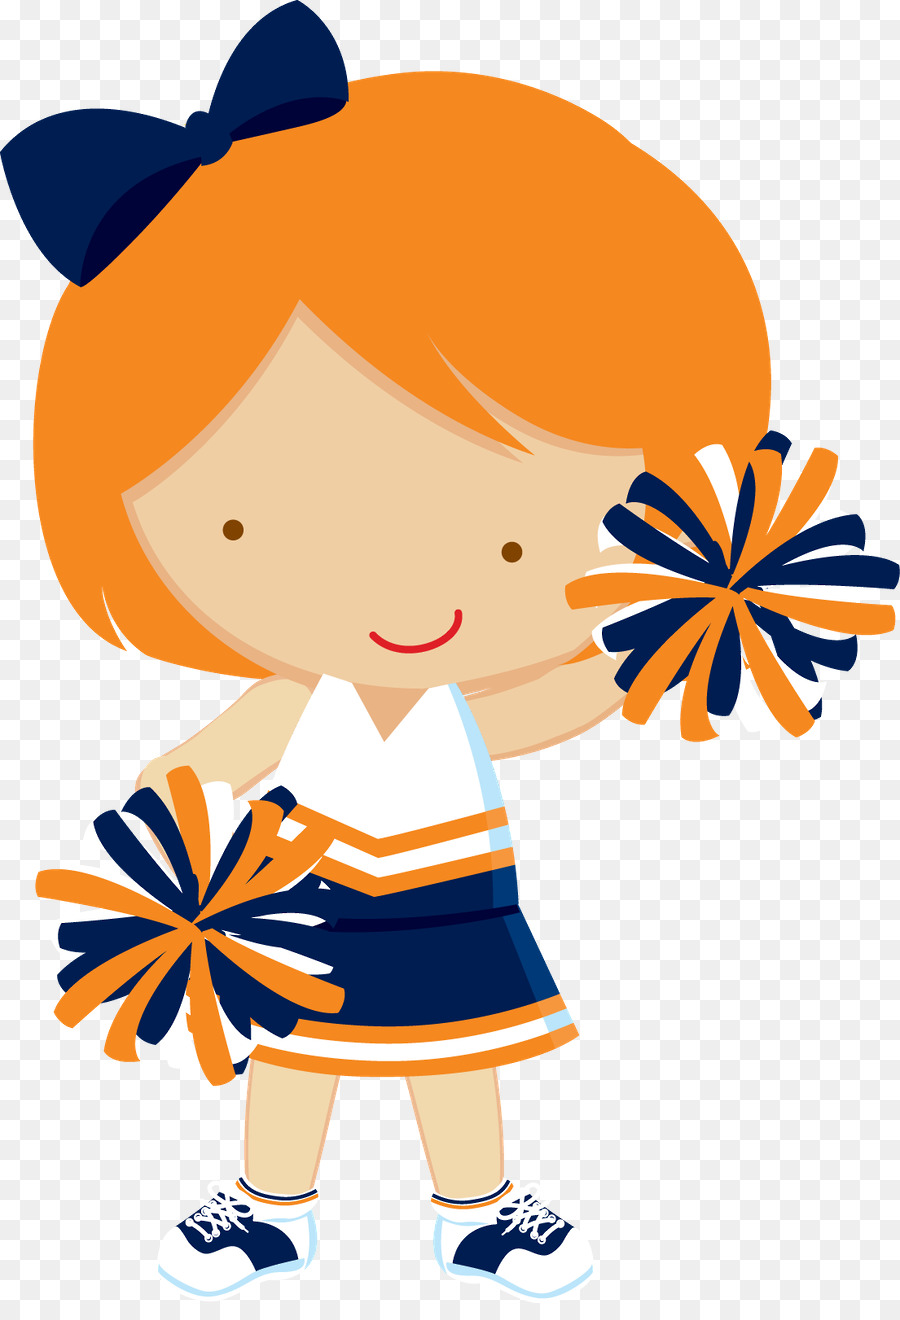 cheerleader clipart orange